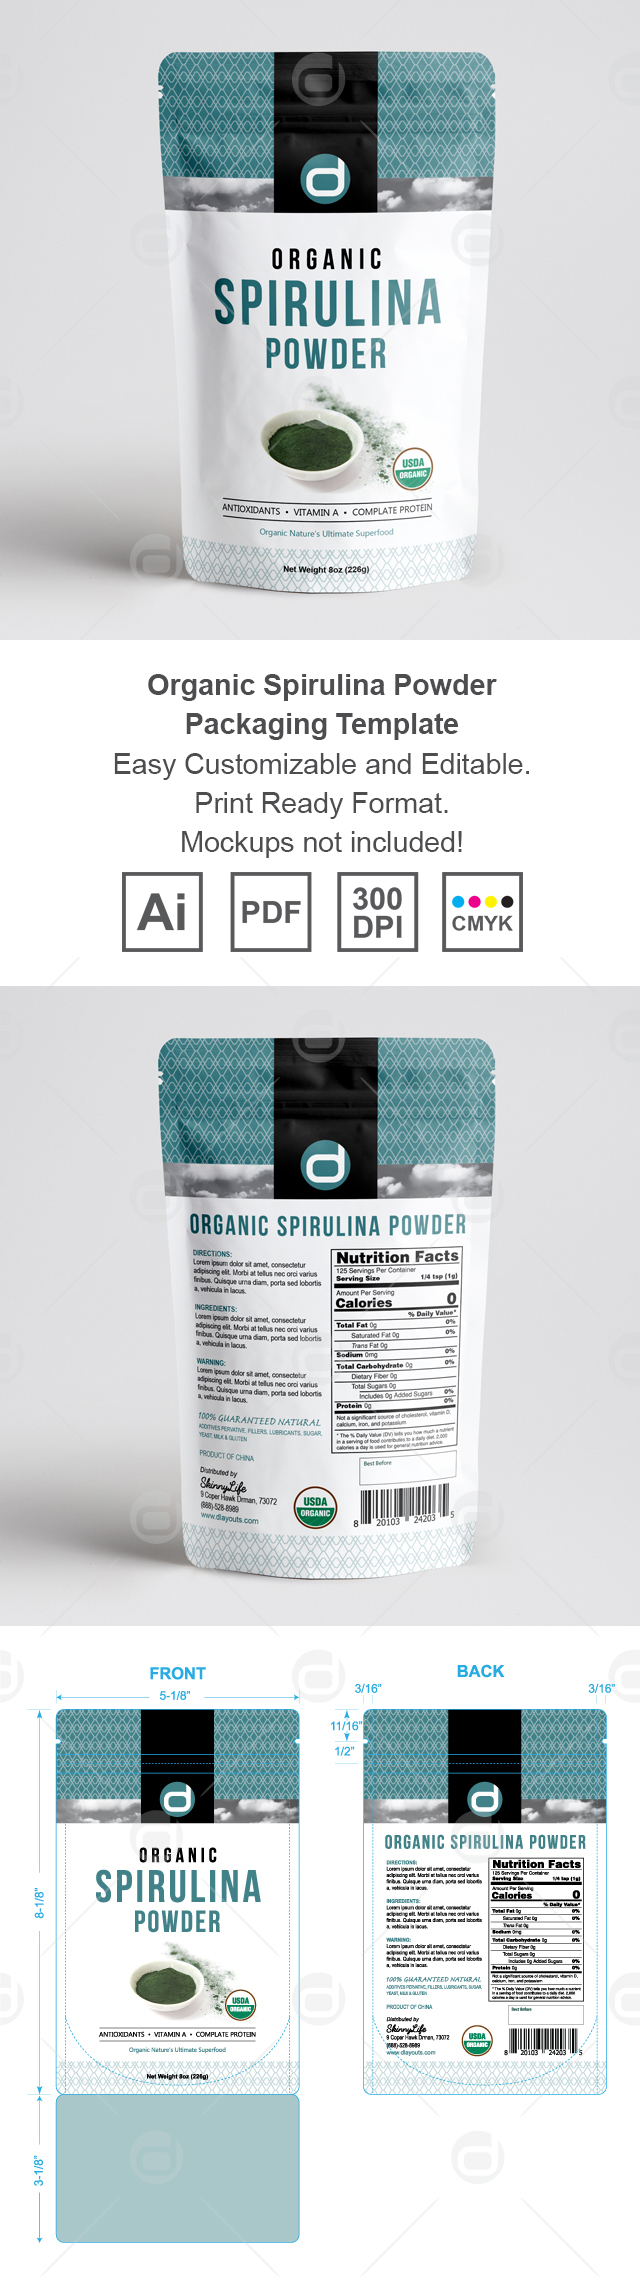 Organic Spirulina Powder Packaging Template